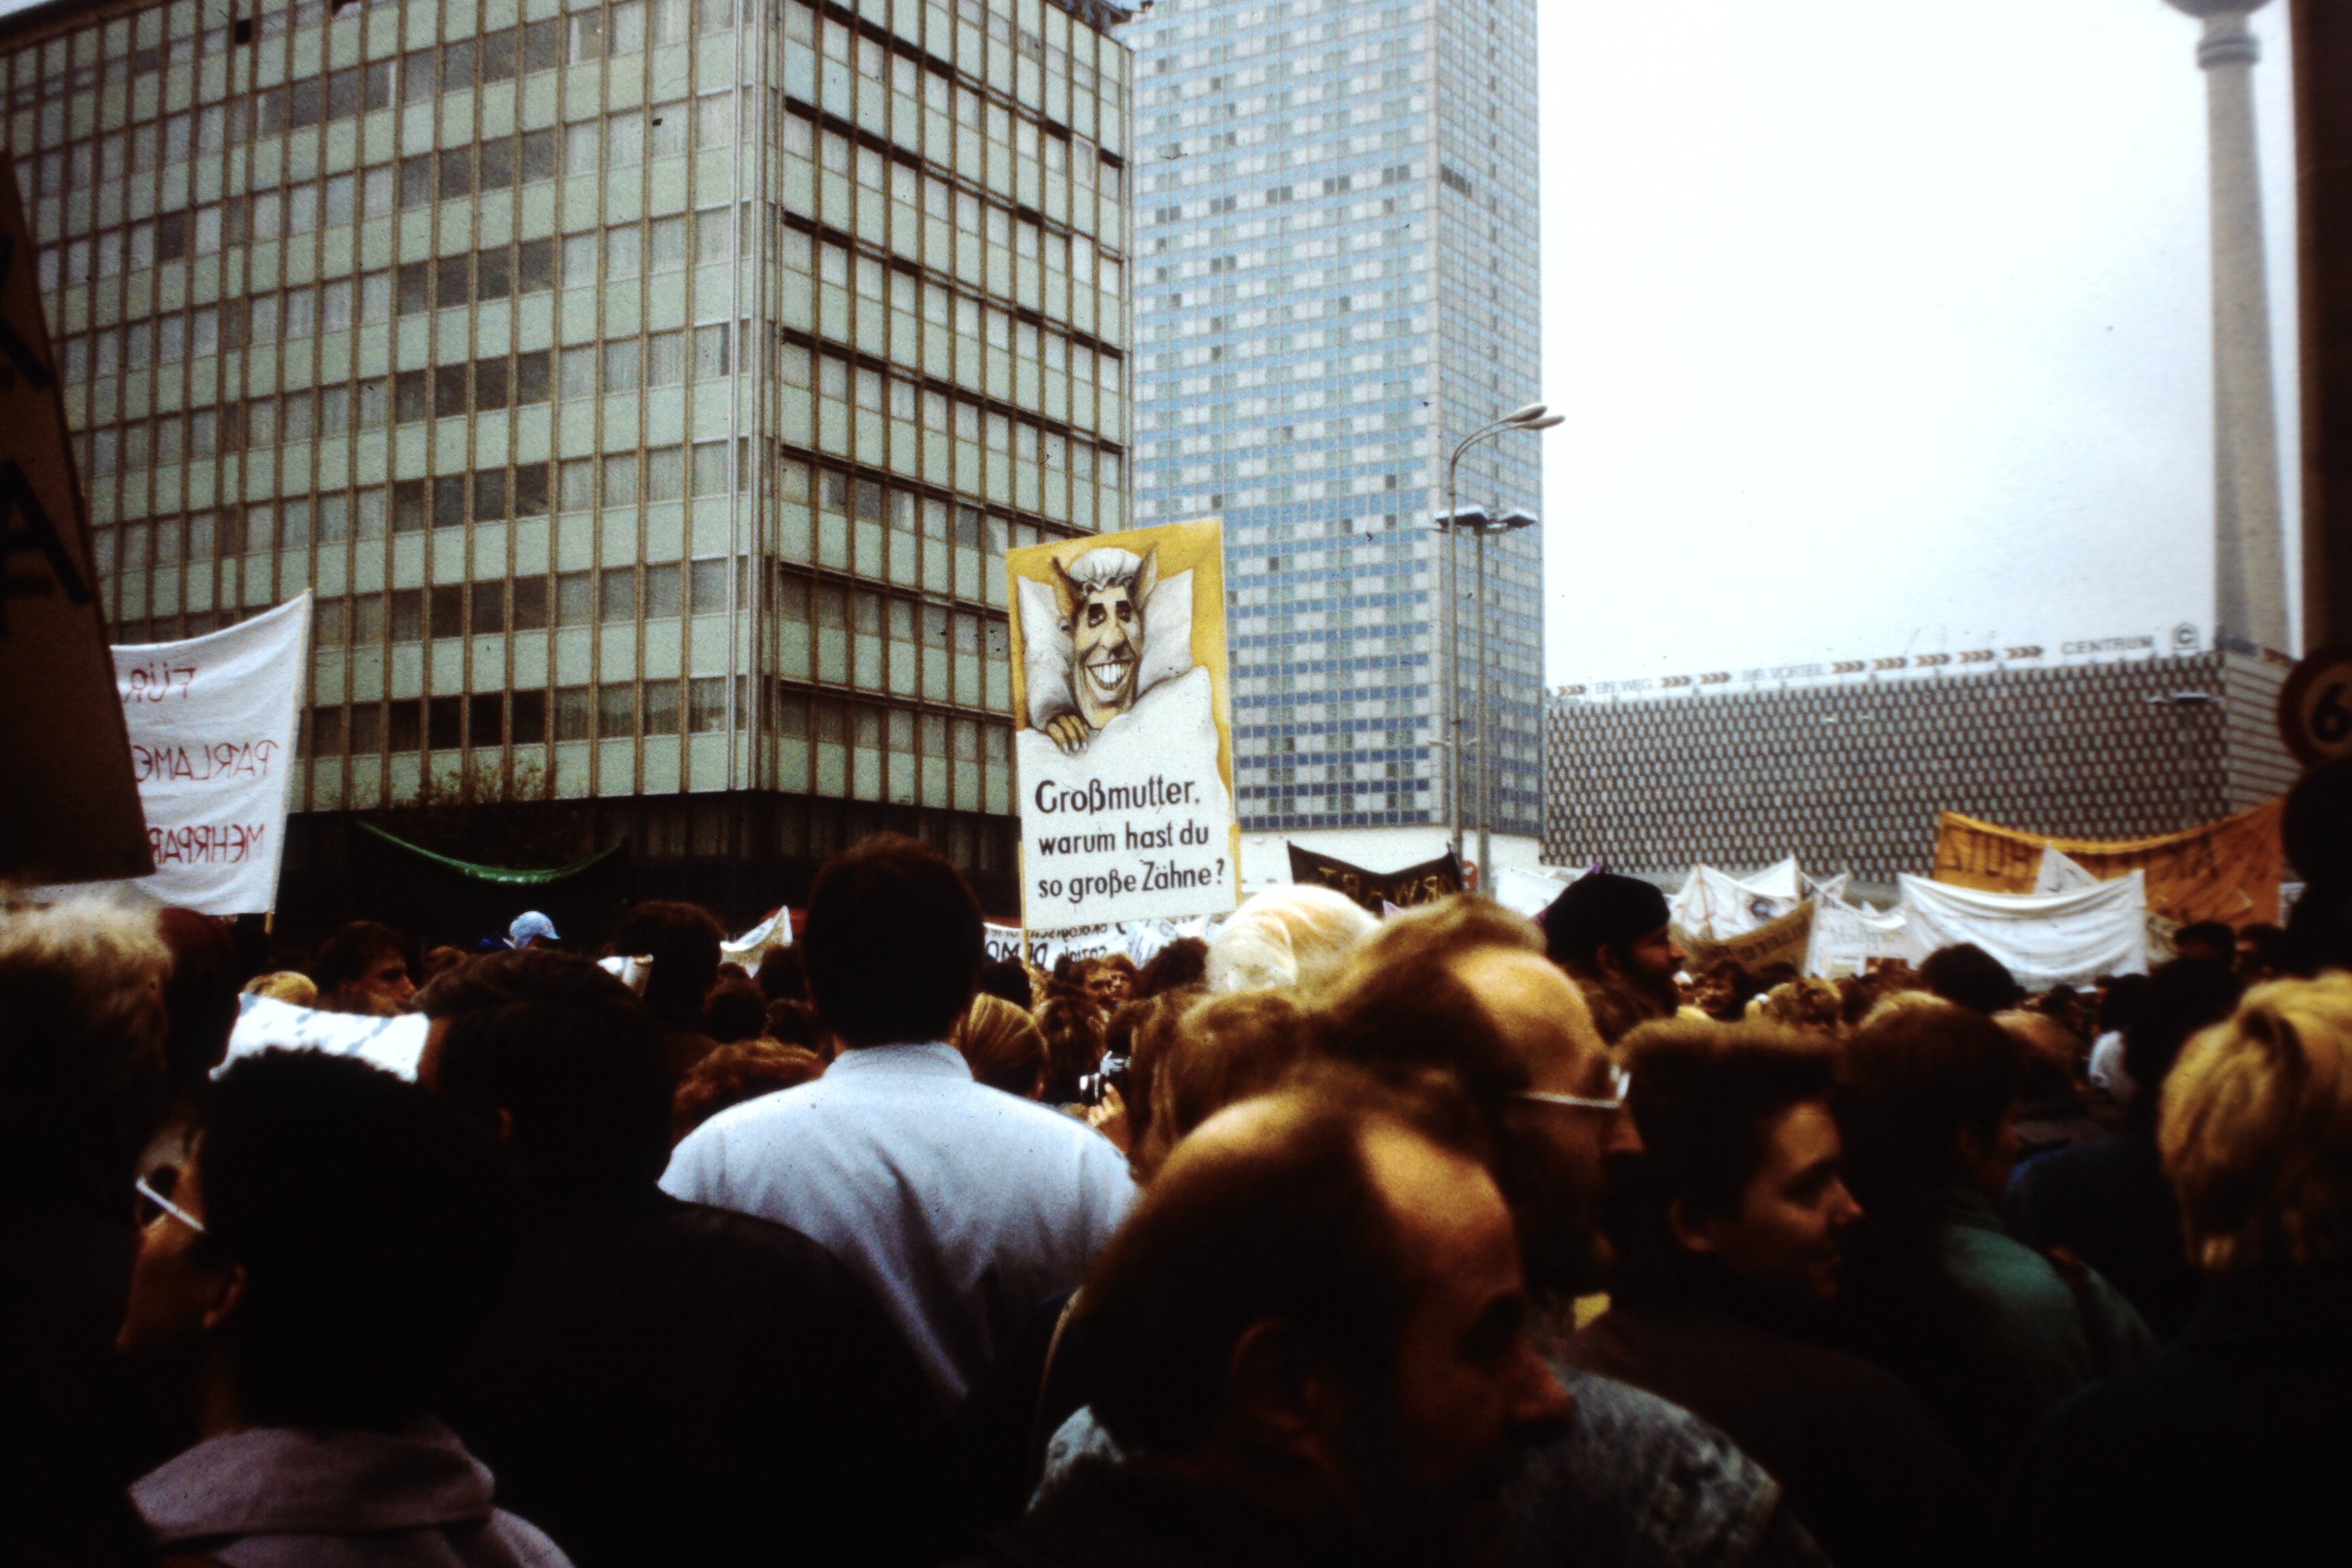 Großdemonstration in Ost-Berlin am 04. November 1989: Plakat mit der Aufschrift: "Großmutter warum hast du so große Zähne" (DDR Geschichtsmuseum im Dokumentationszentrum Perleberg CC BY-SA)